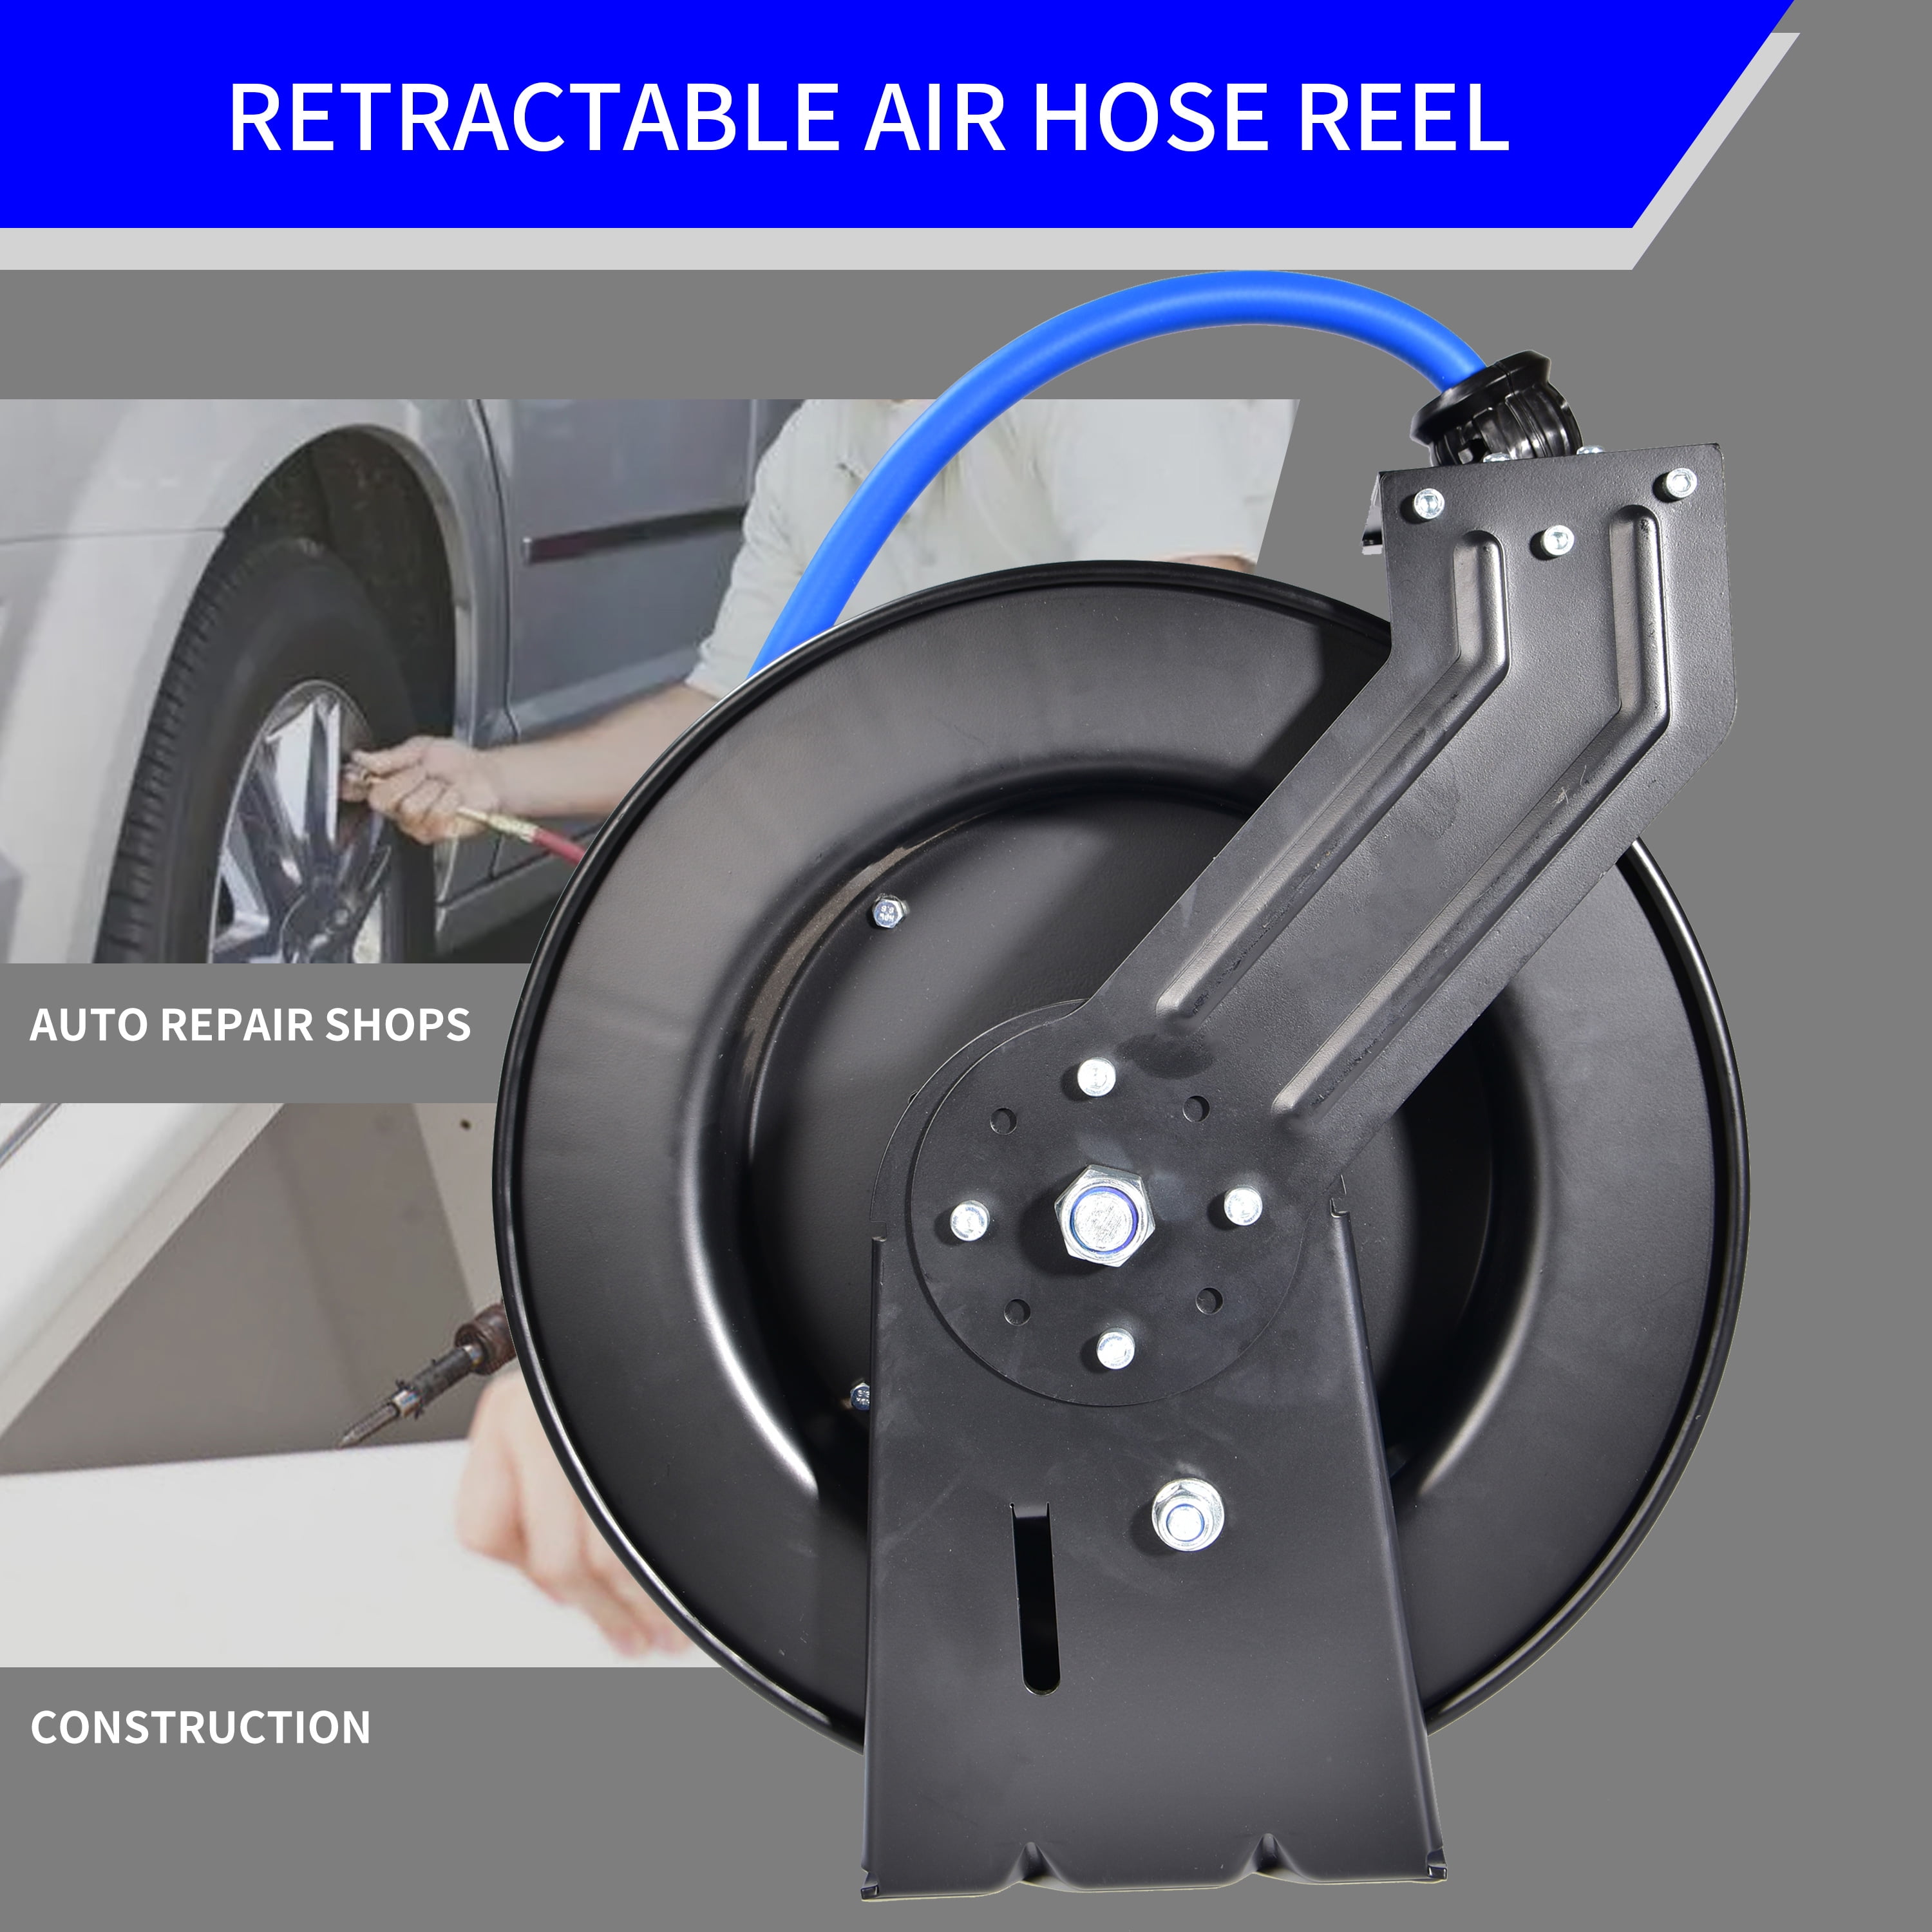 Retractable Air Hose Reel, 1/2 Inch x 50' Ft Wall Mount Auto Rewind Hoseu- Reel, Max pressure 300 psi, Blue 